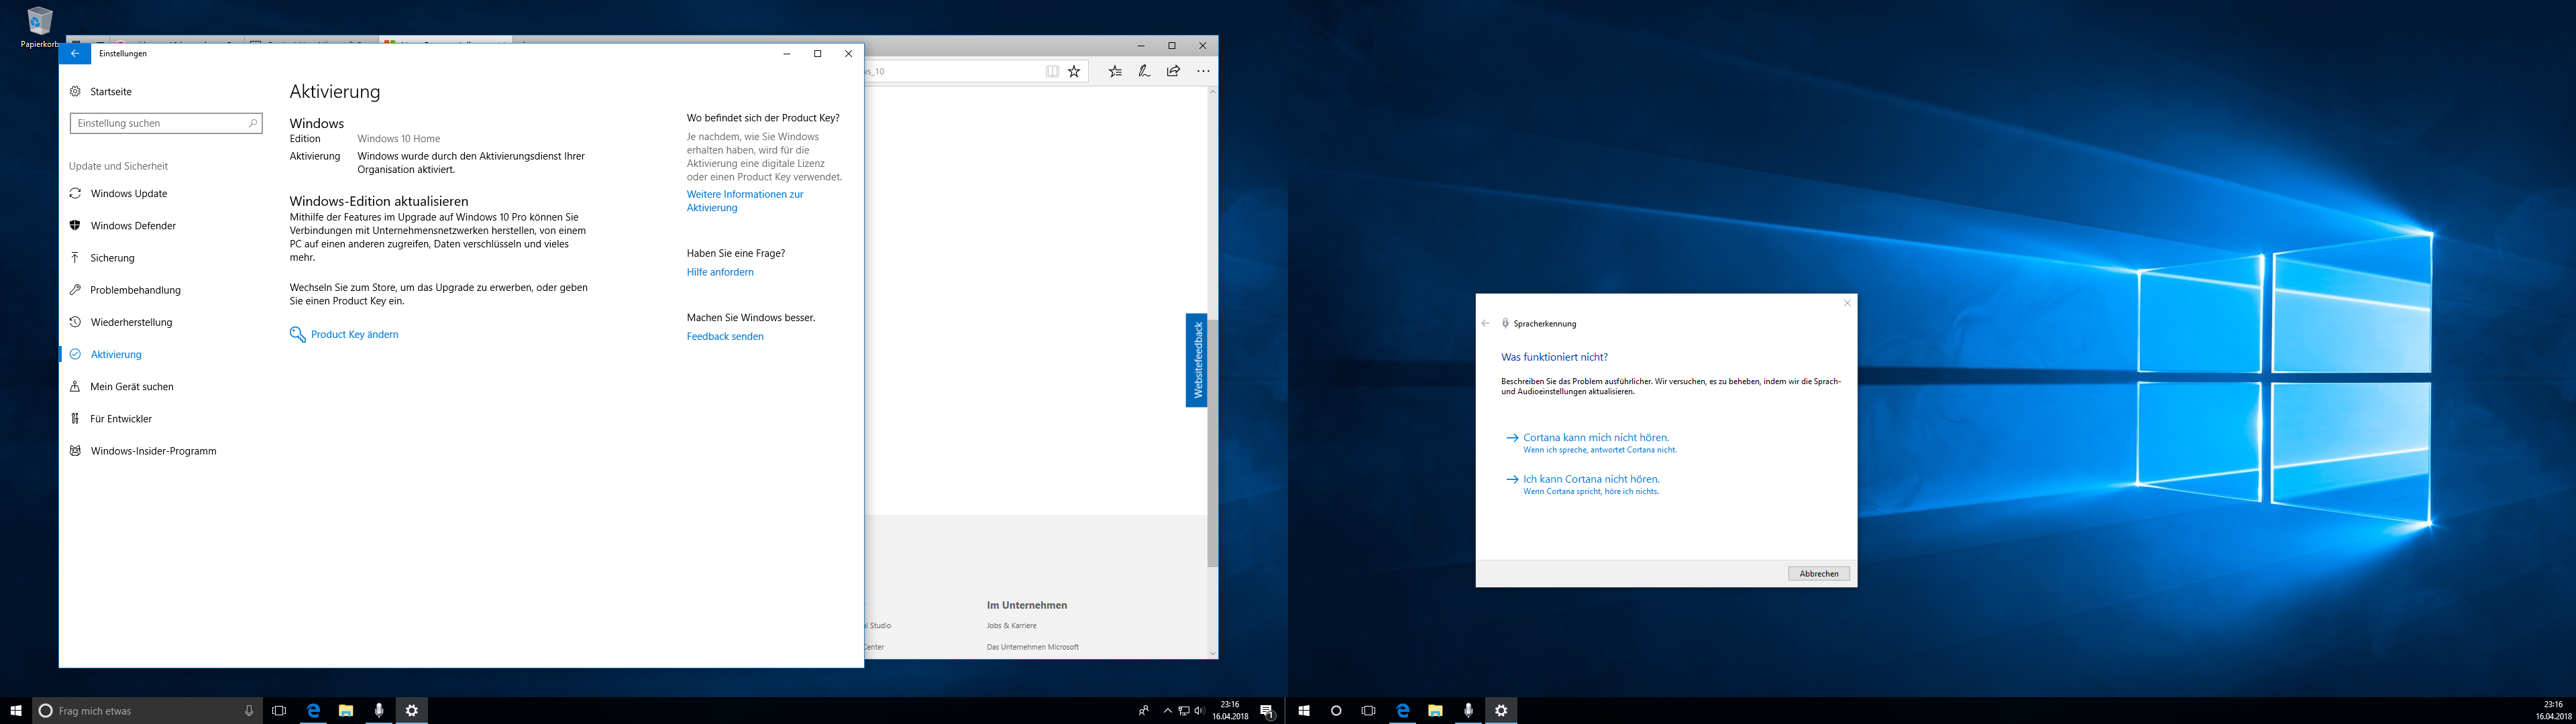 Windows 10 Lizenz abgelaufen nach gratis Aktivierung und Upgrade ?